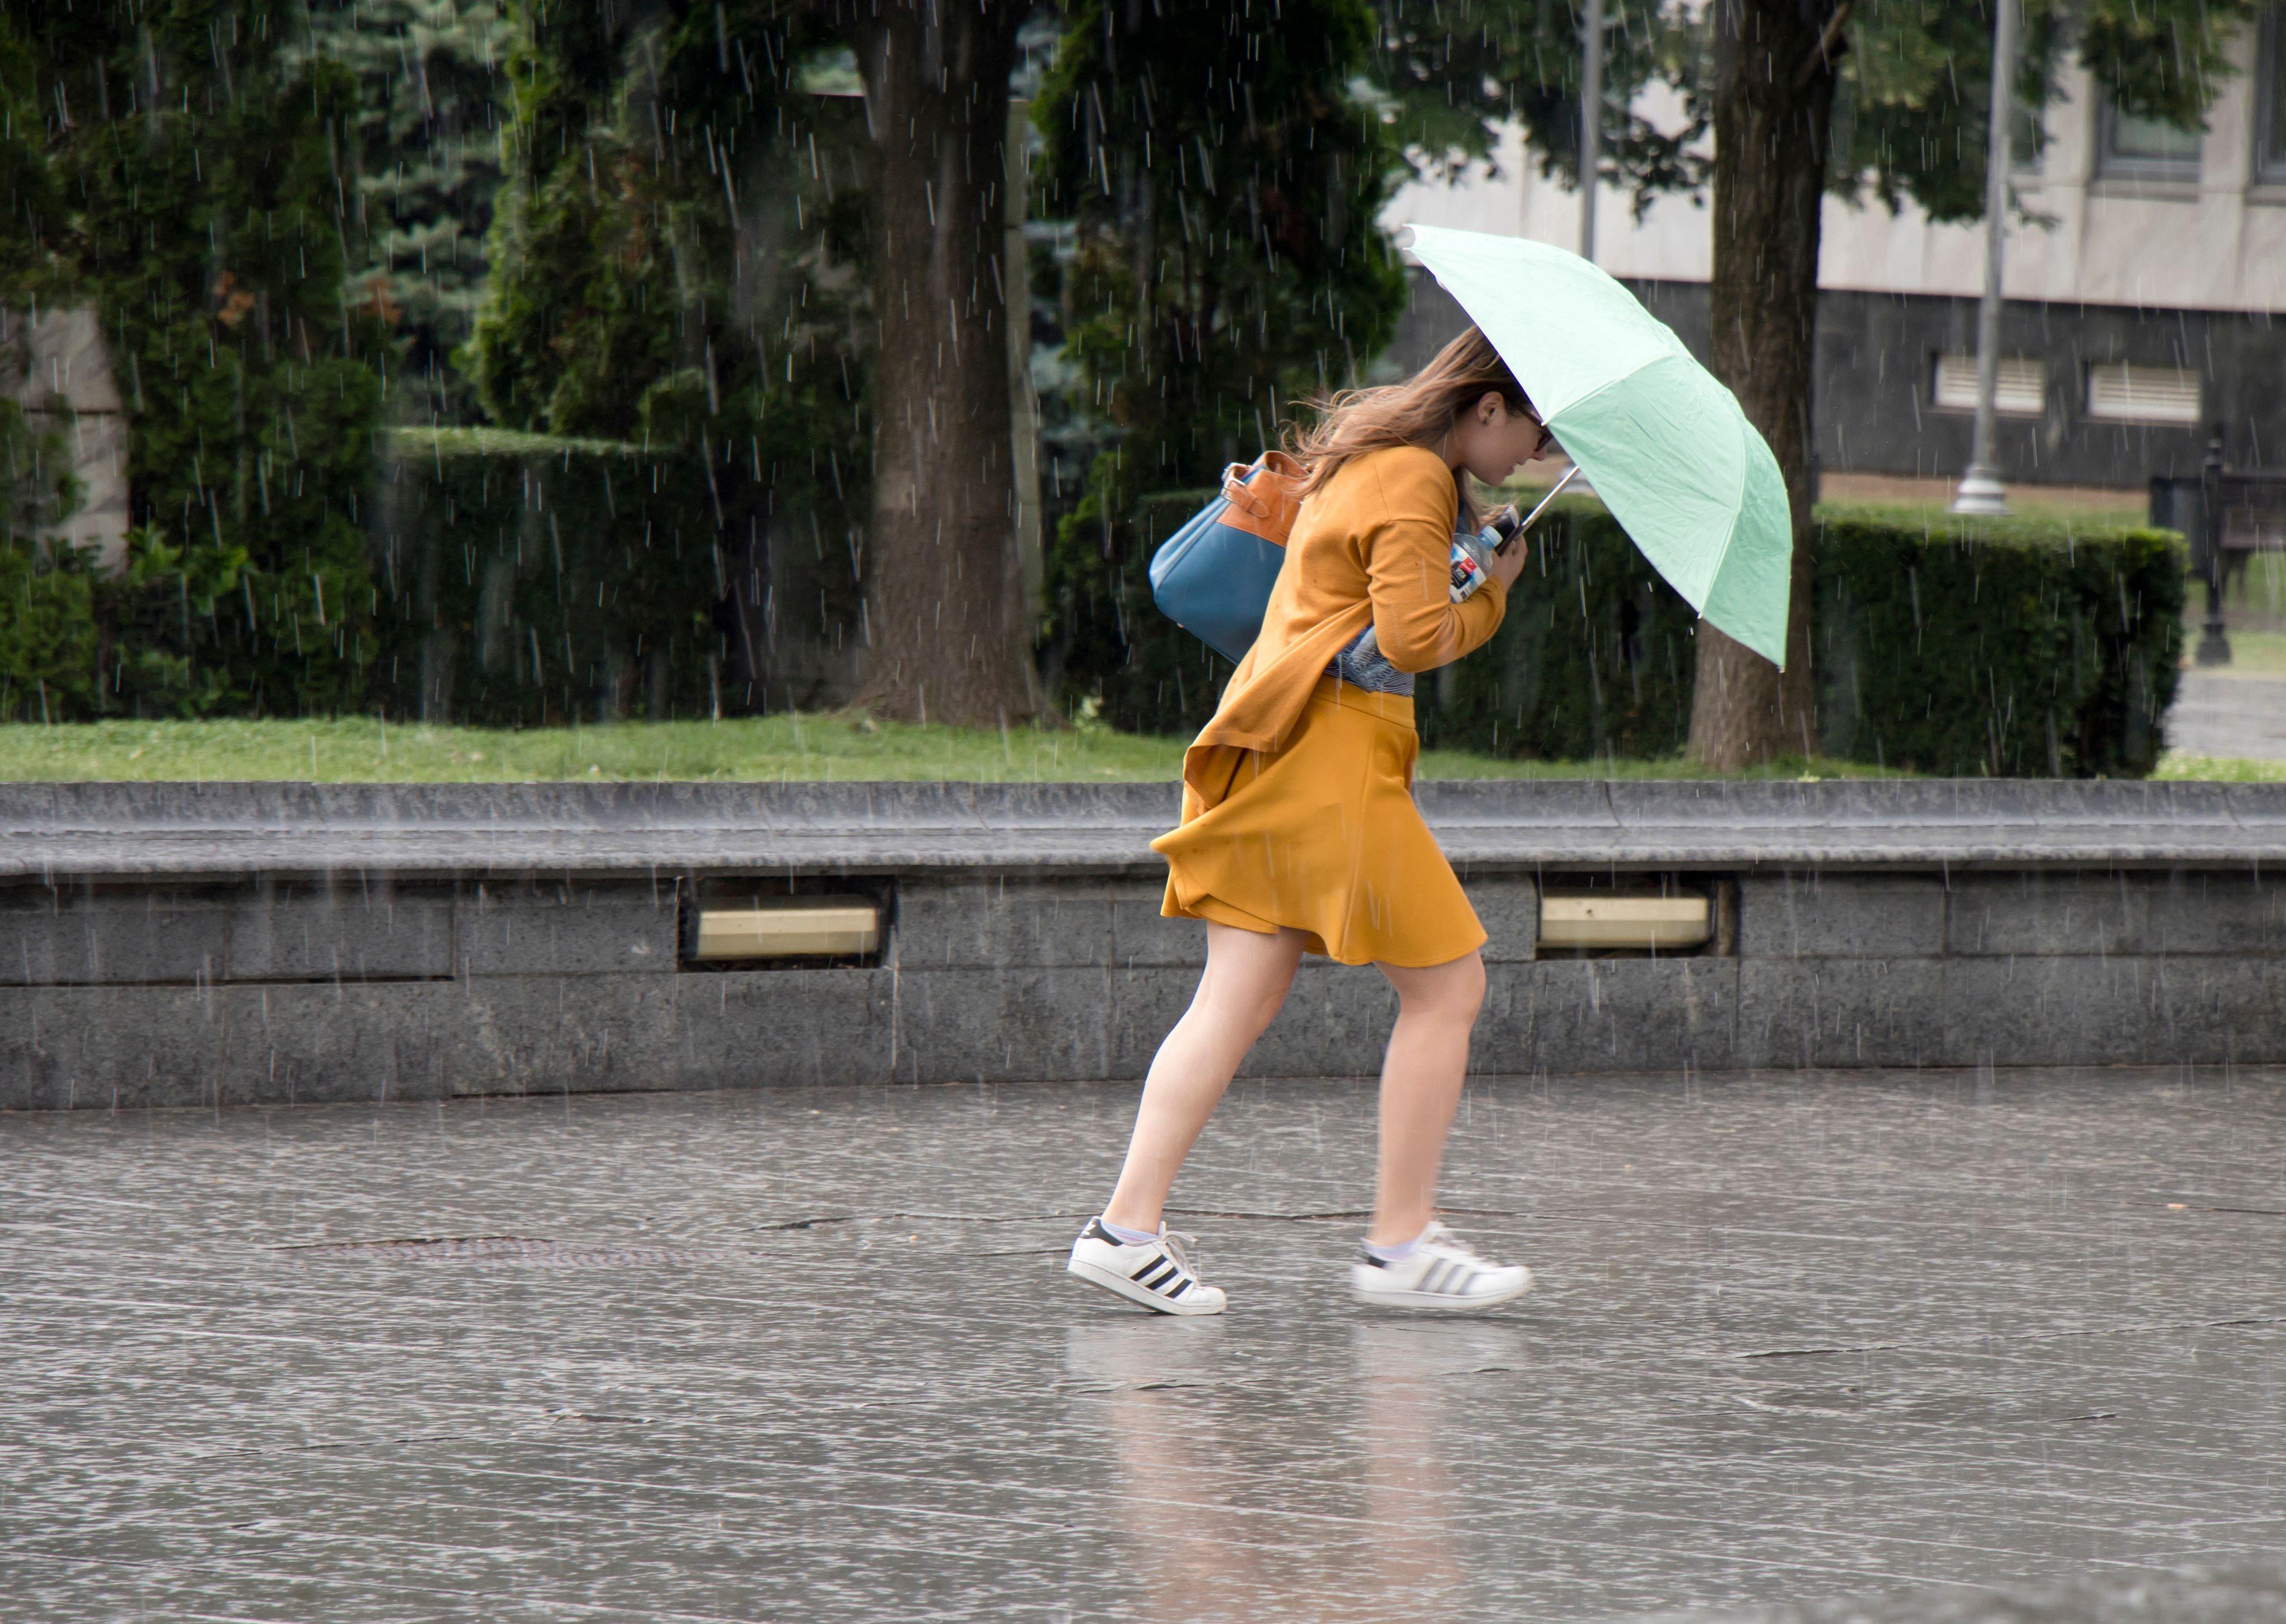 O tânără care aleargă sub umbrelă în ploaia torentială